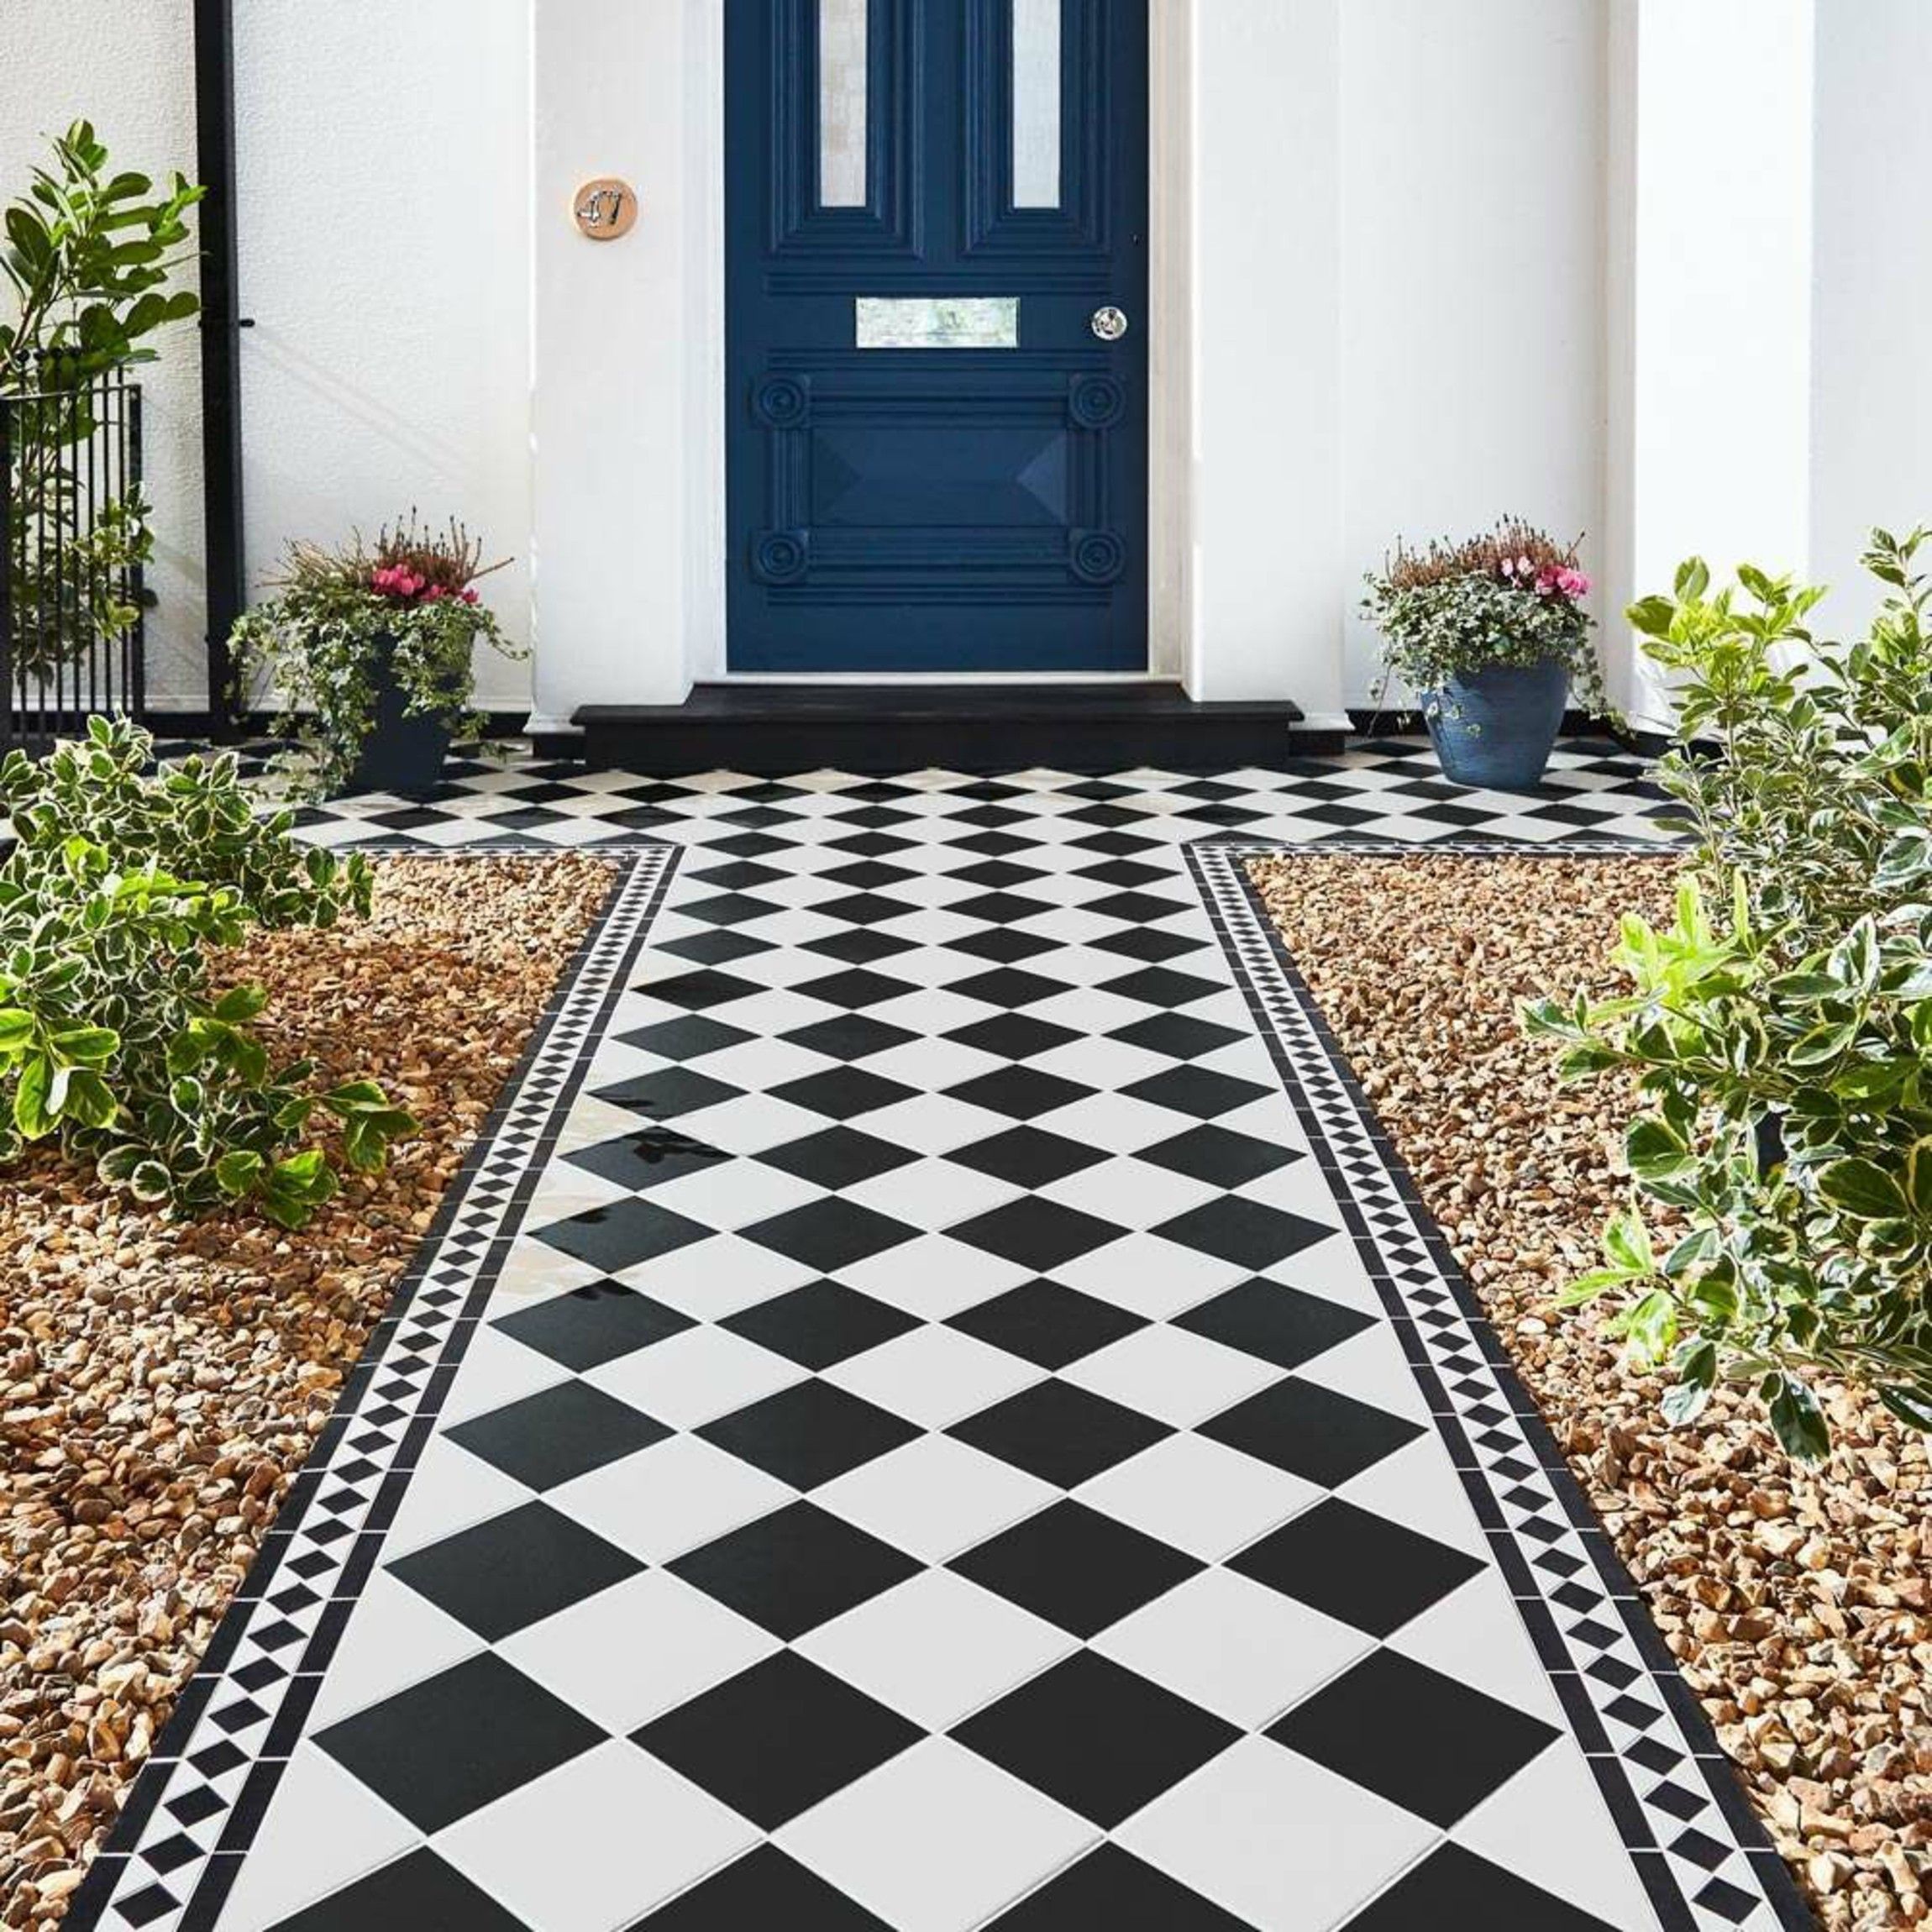 Gosford Black and White Border Tiles